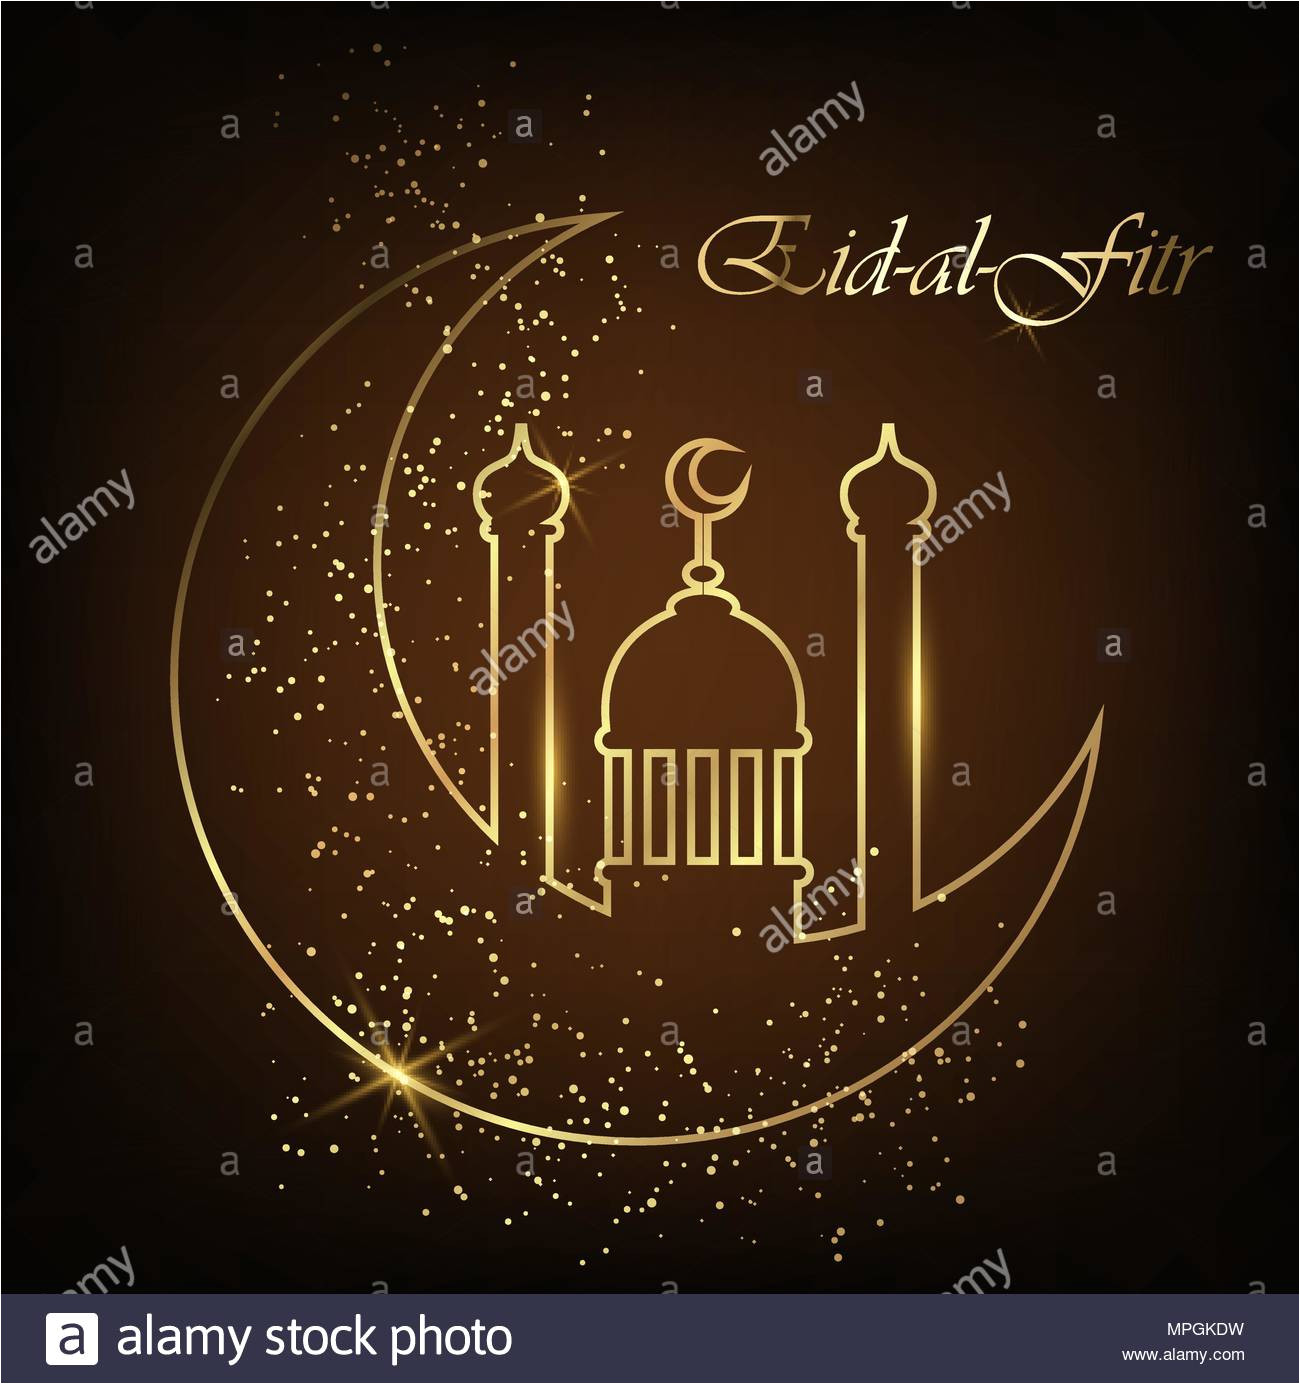 eid al fitr grusskarte mit line moschee kuppel mond und goldenen sand eid mubarak vector illustration auf schwarzen hintergrund mpgkdw jpg